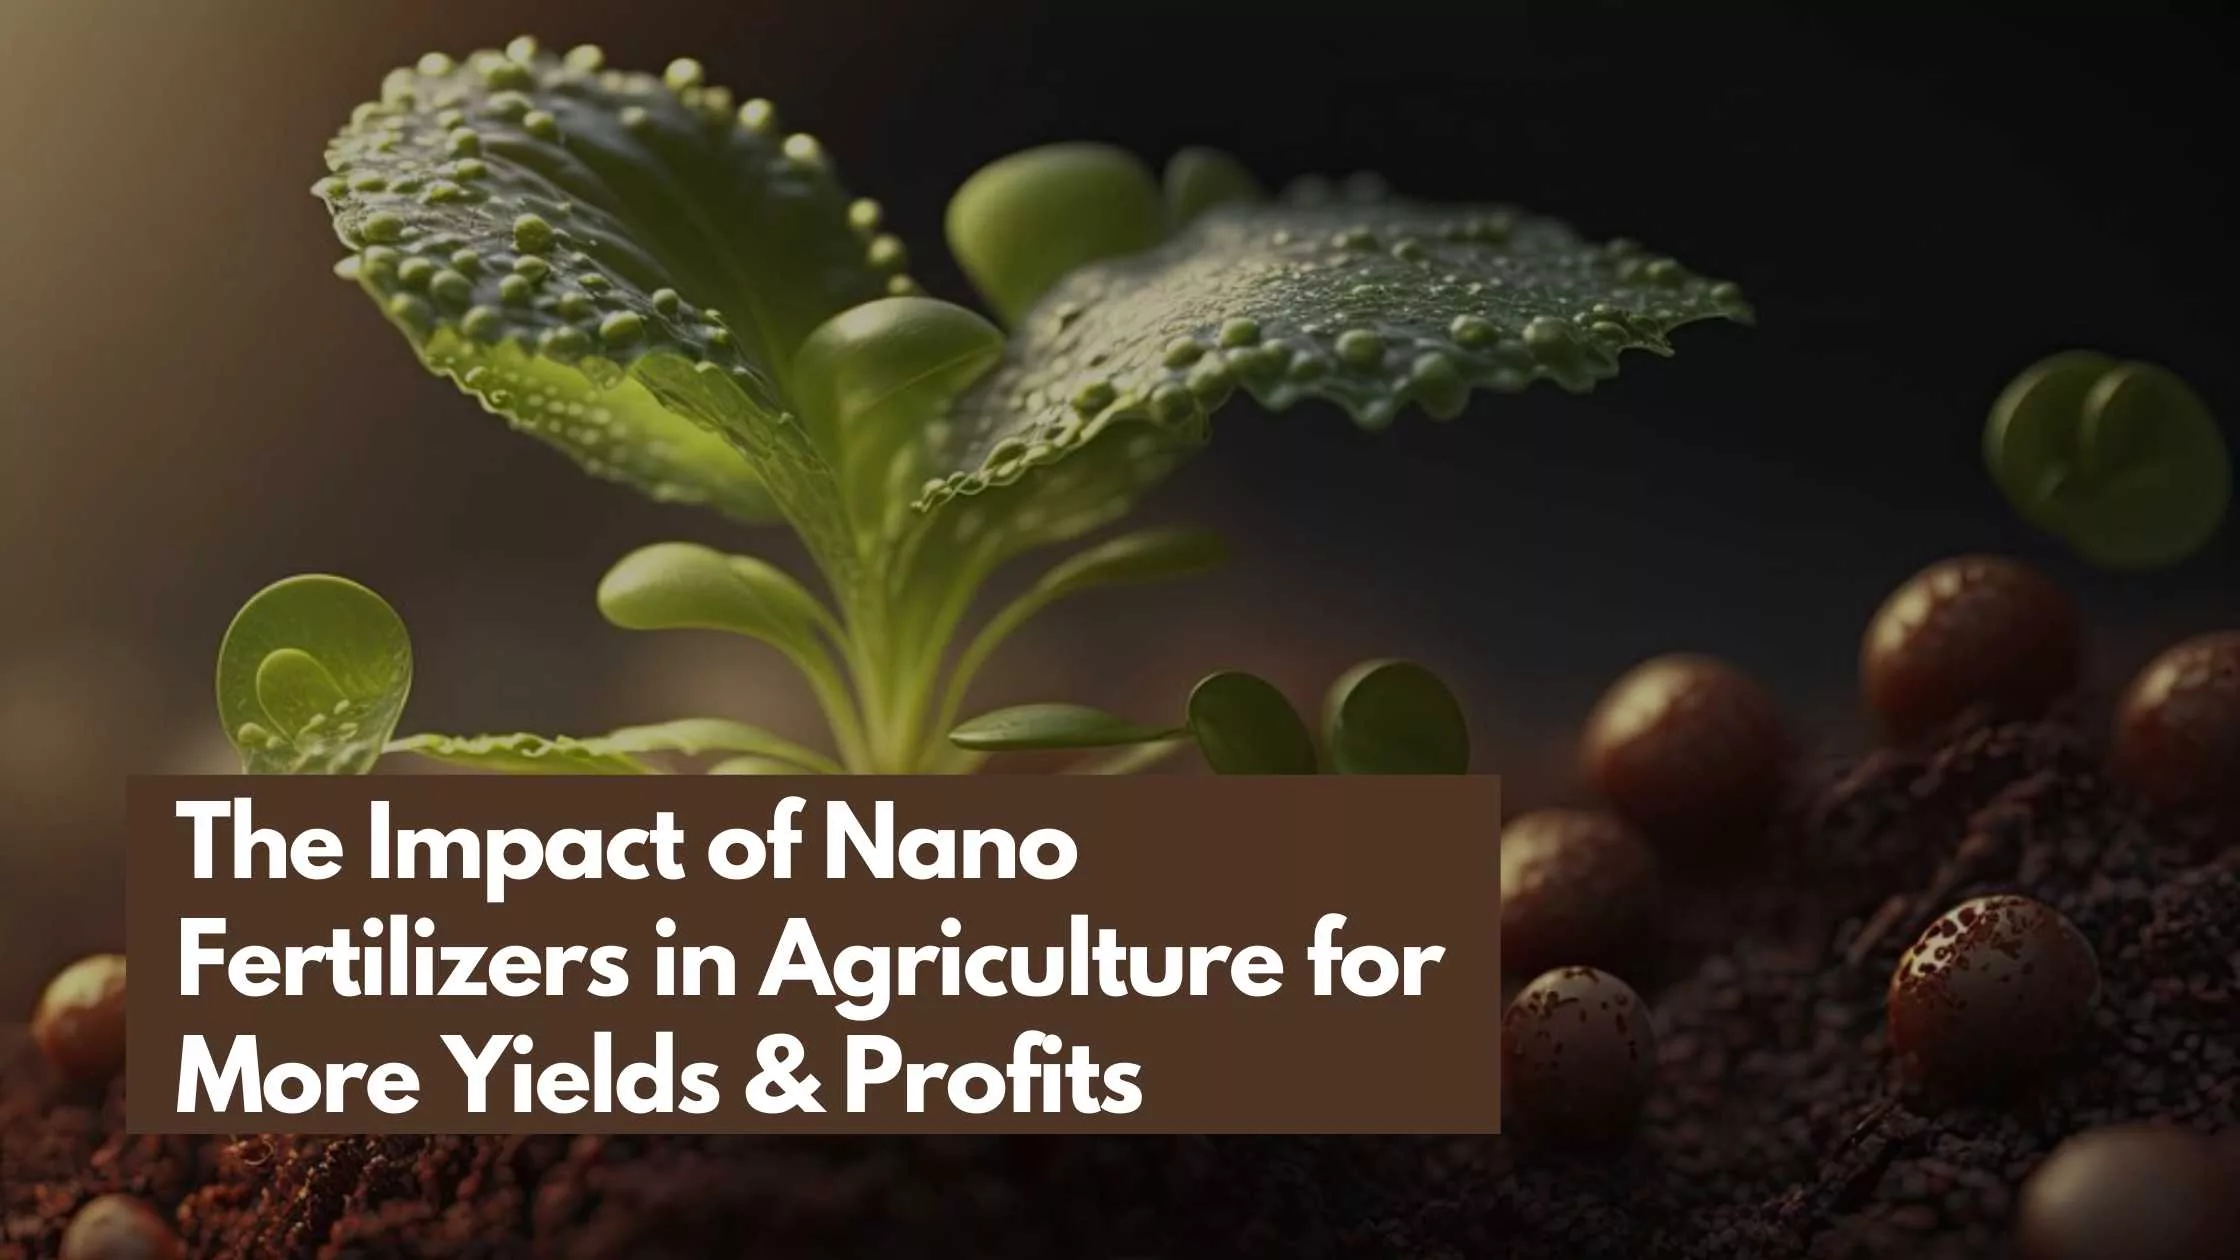 Nano Fertilizers in Agriculture